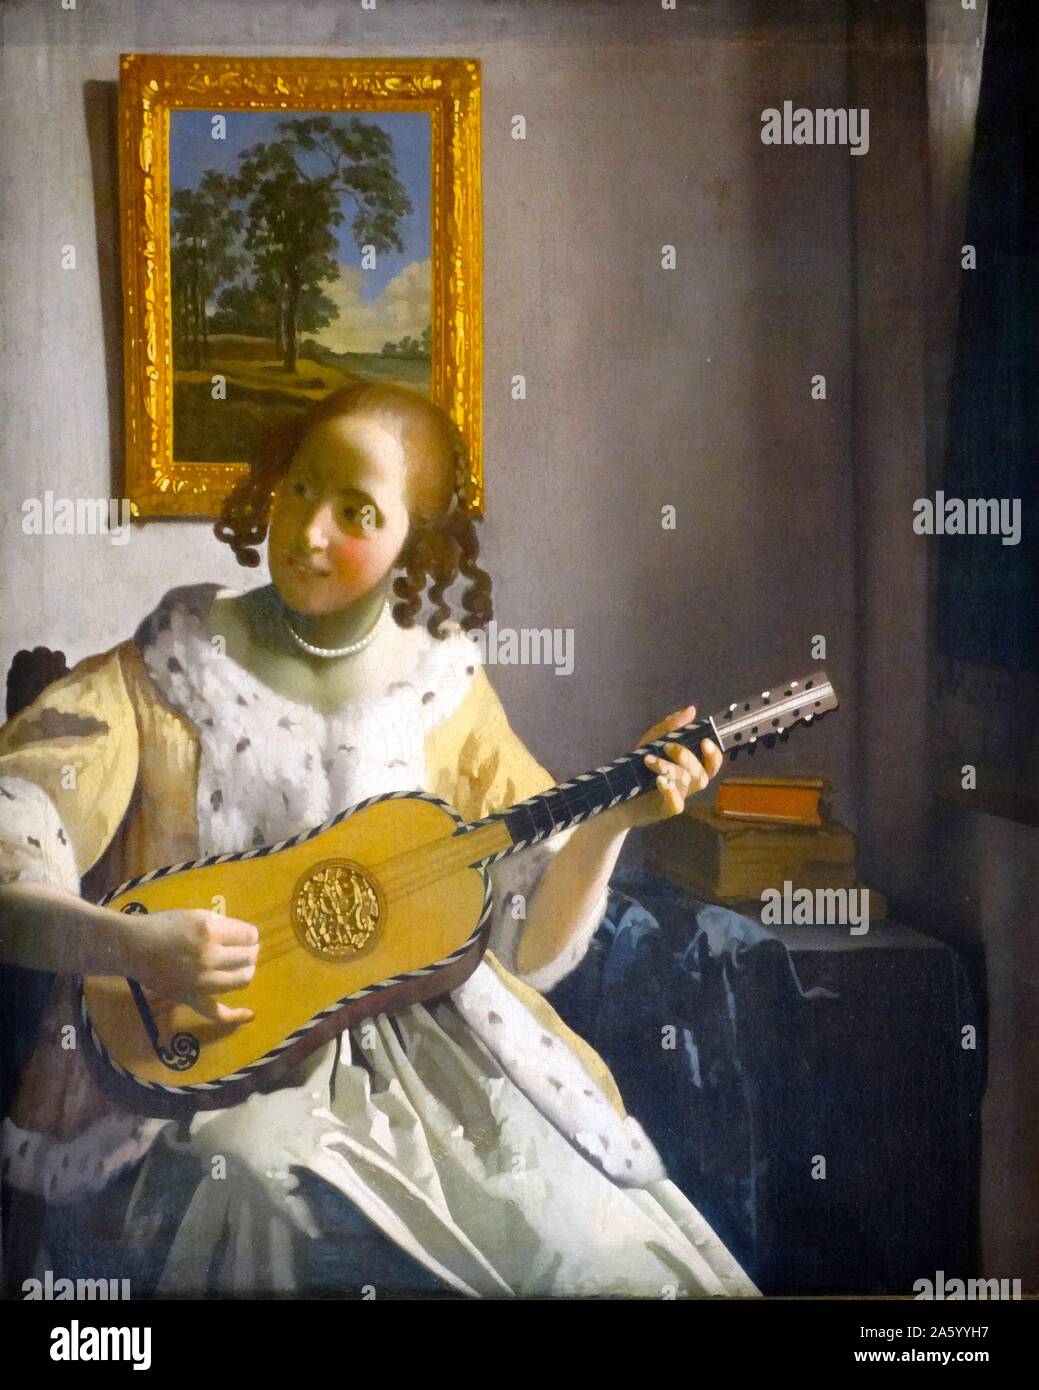 Gemälde mit dem Titel "The Guitar Player" niederländischen Malers Johannes Vermeer (1632-1675). Vom 17. Jahrhundert Stockfoto